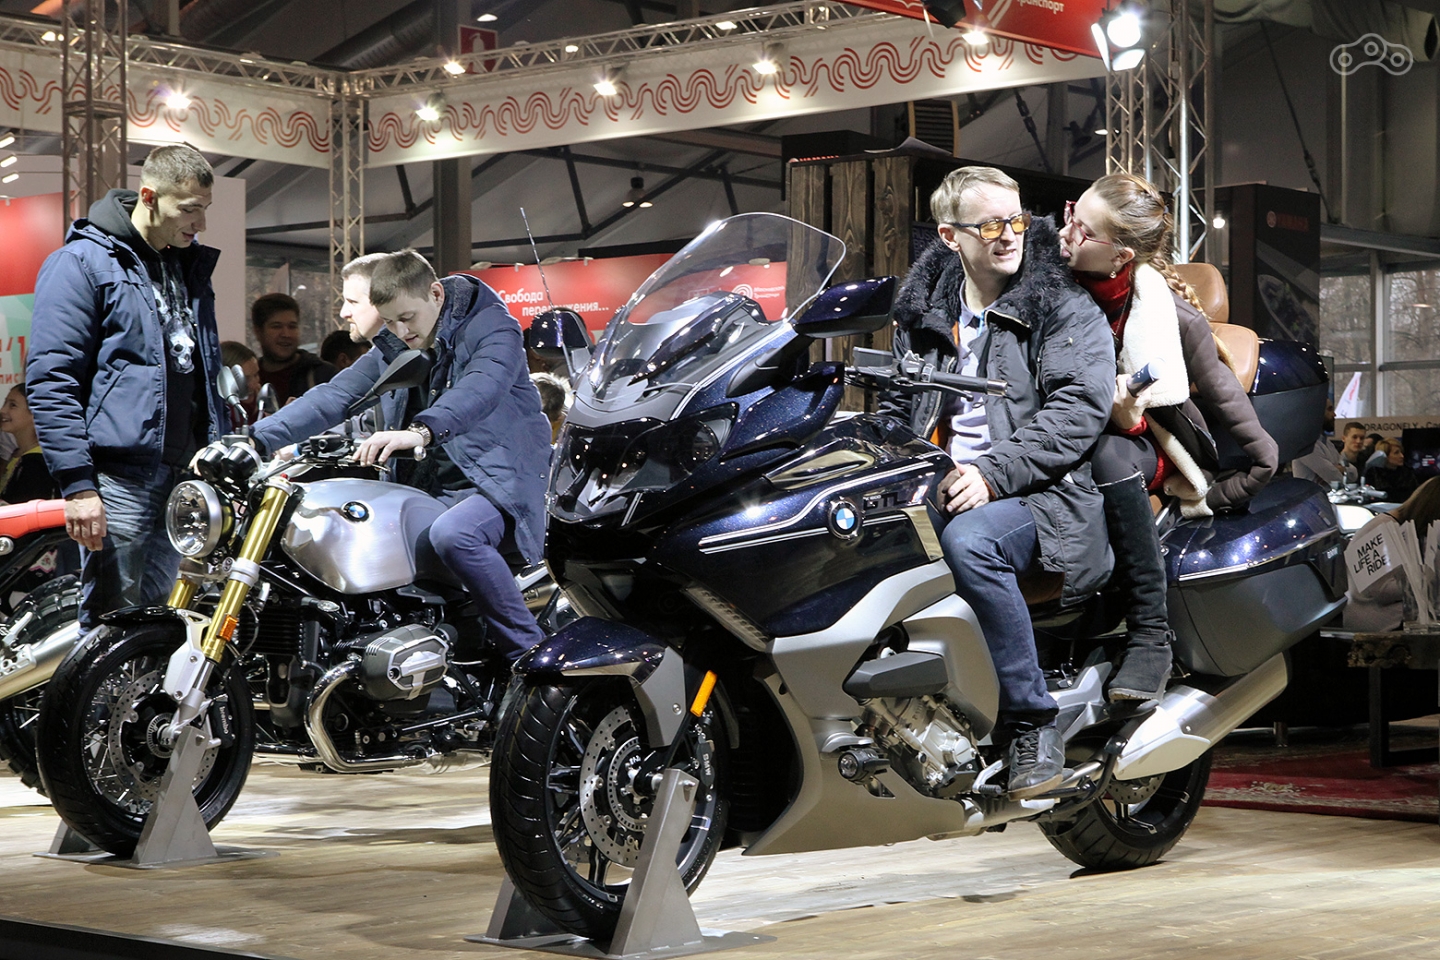 Помимо разнообразных исполнений неоклассика R NineT, на стенде BMW можно увидеть мотоциклы семейства K1600